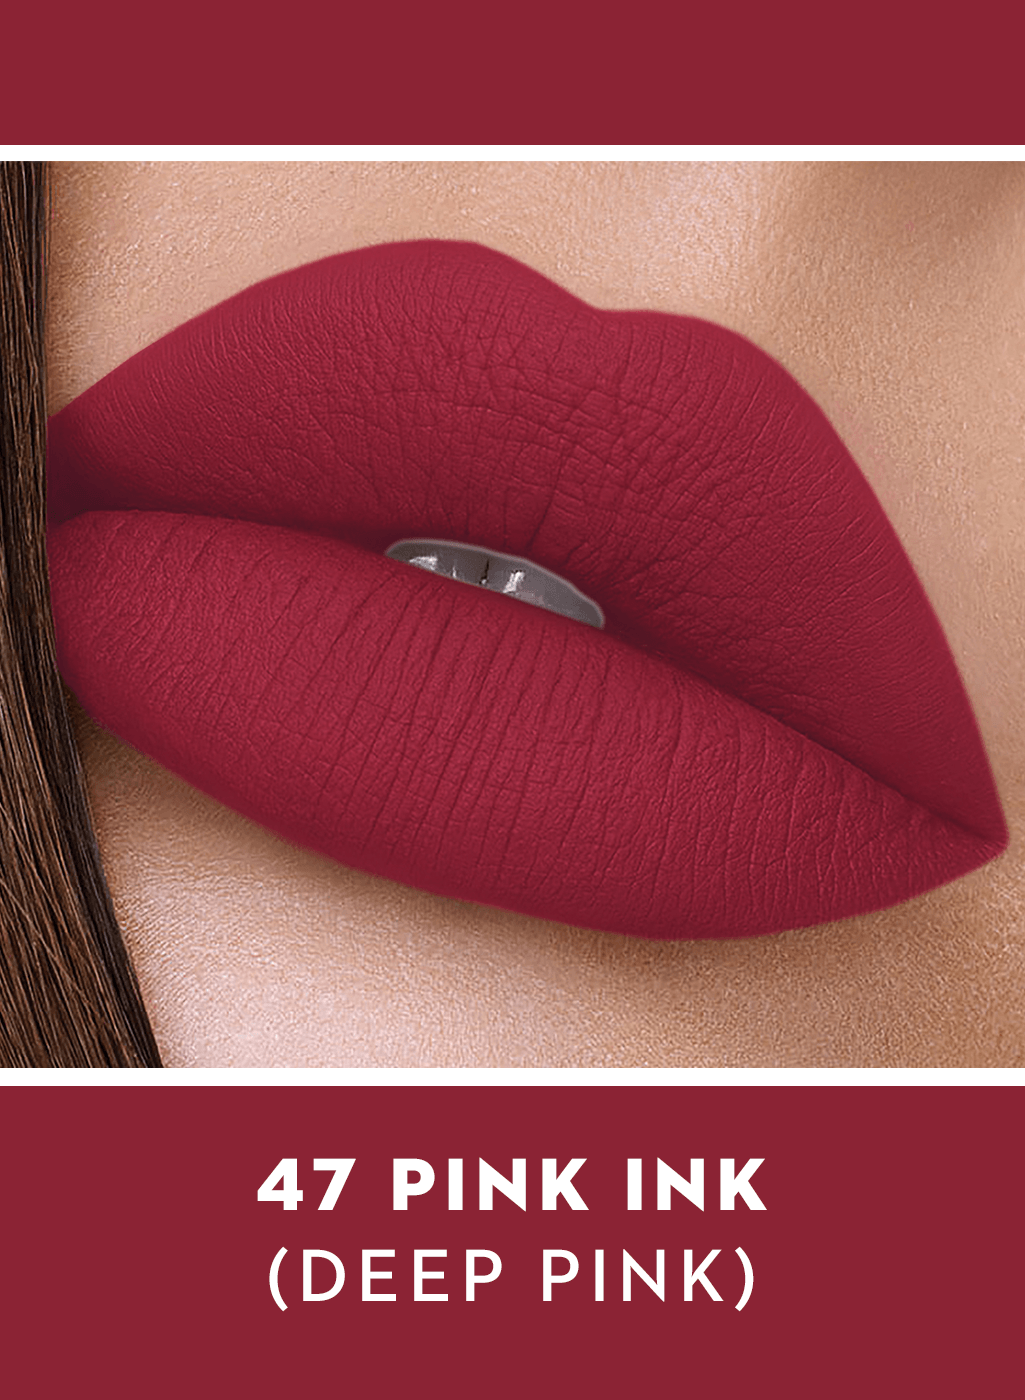 dark pink lipstick